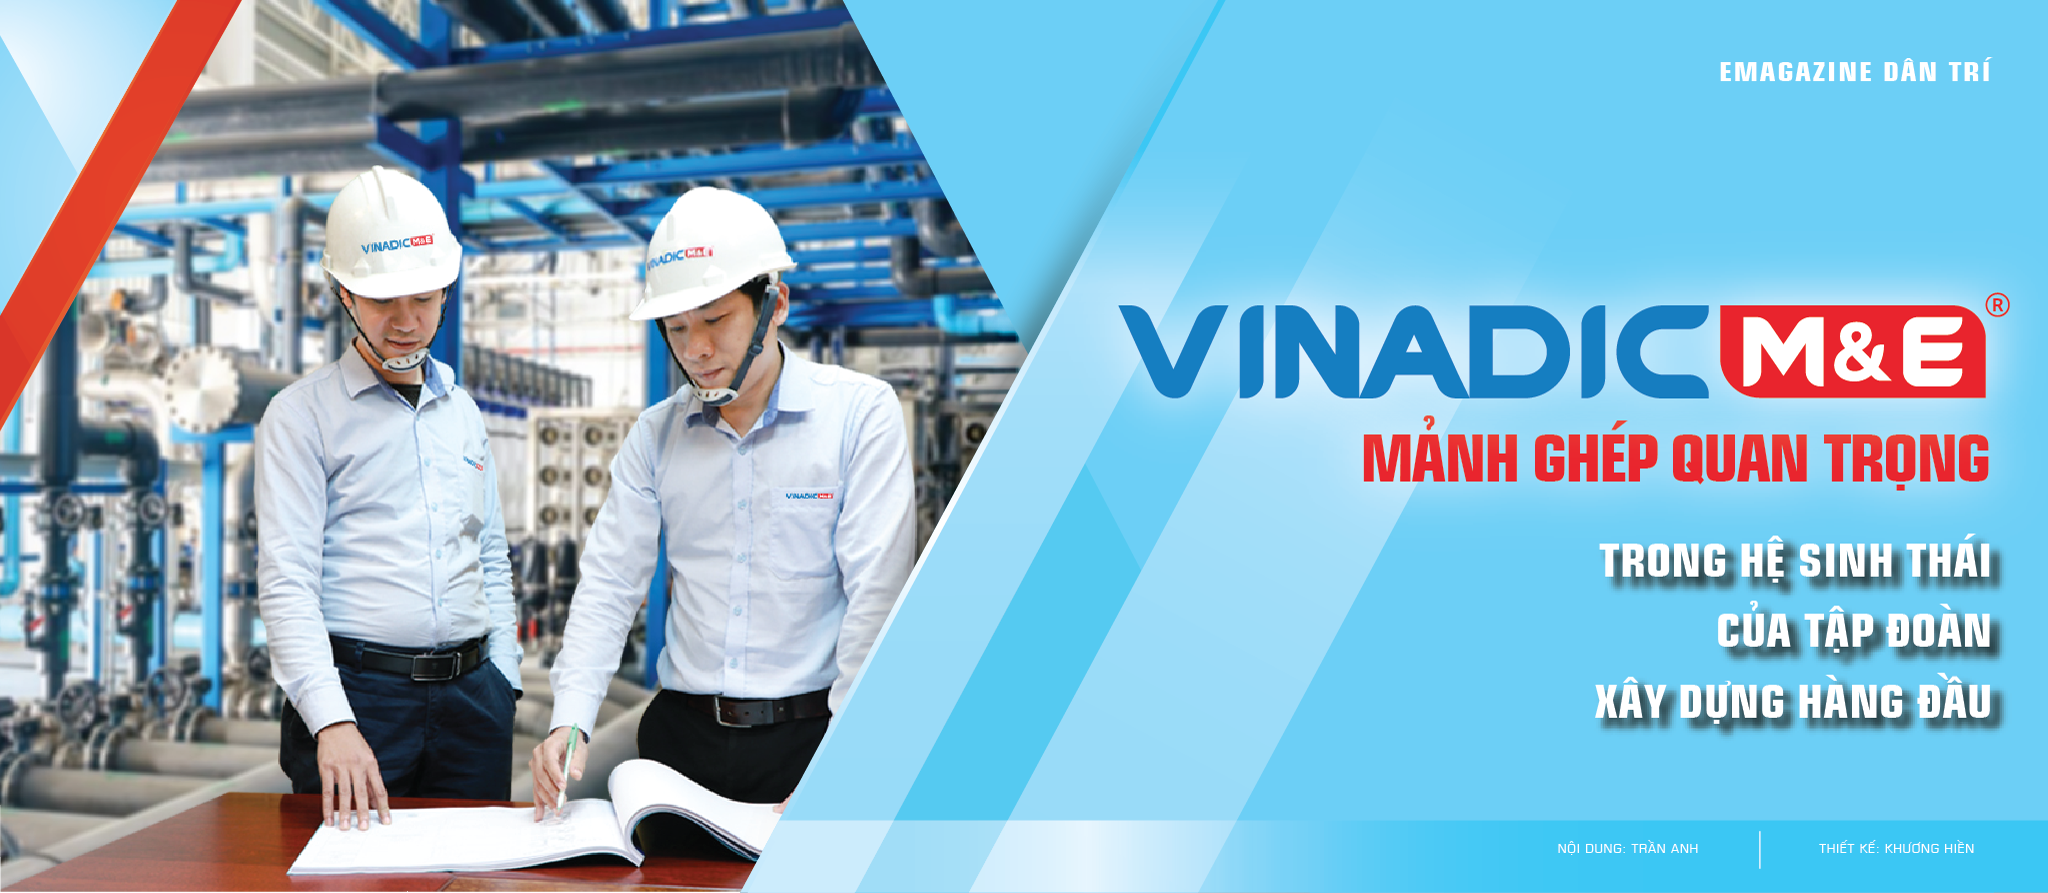 VINADIC ME - Mảnh ghép quan trọng trong hệ sinh thái của Tập đoàn xây dựng hàng đầu